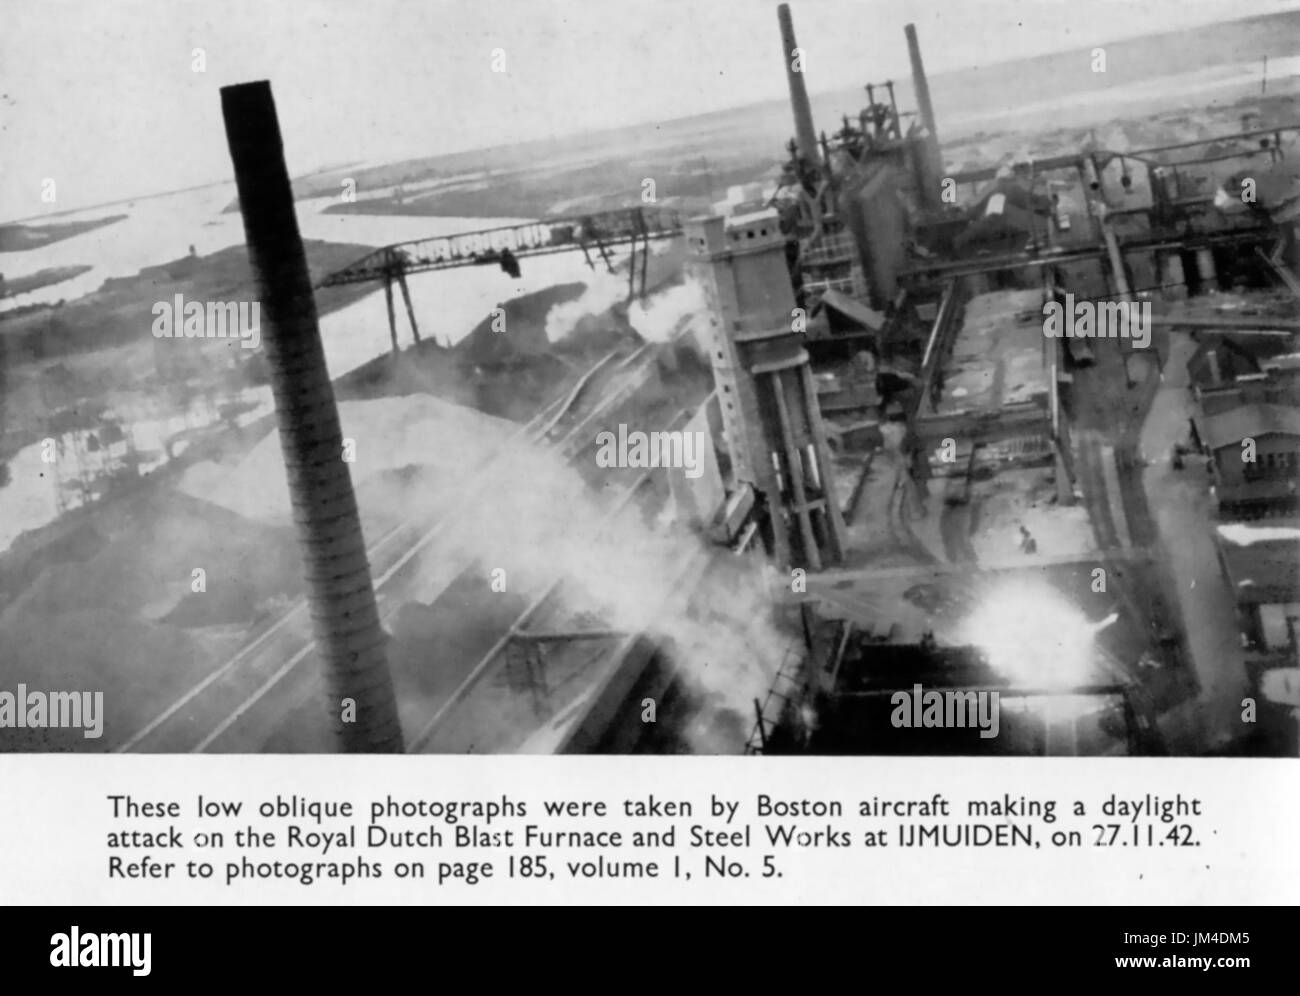 IJMDIDEN, Olanda. Royal Dutch Steel Works ha attaccato il 27 novembre 1942. Foto: prove nella fotocamera Foto Stock